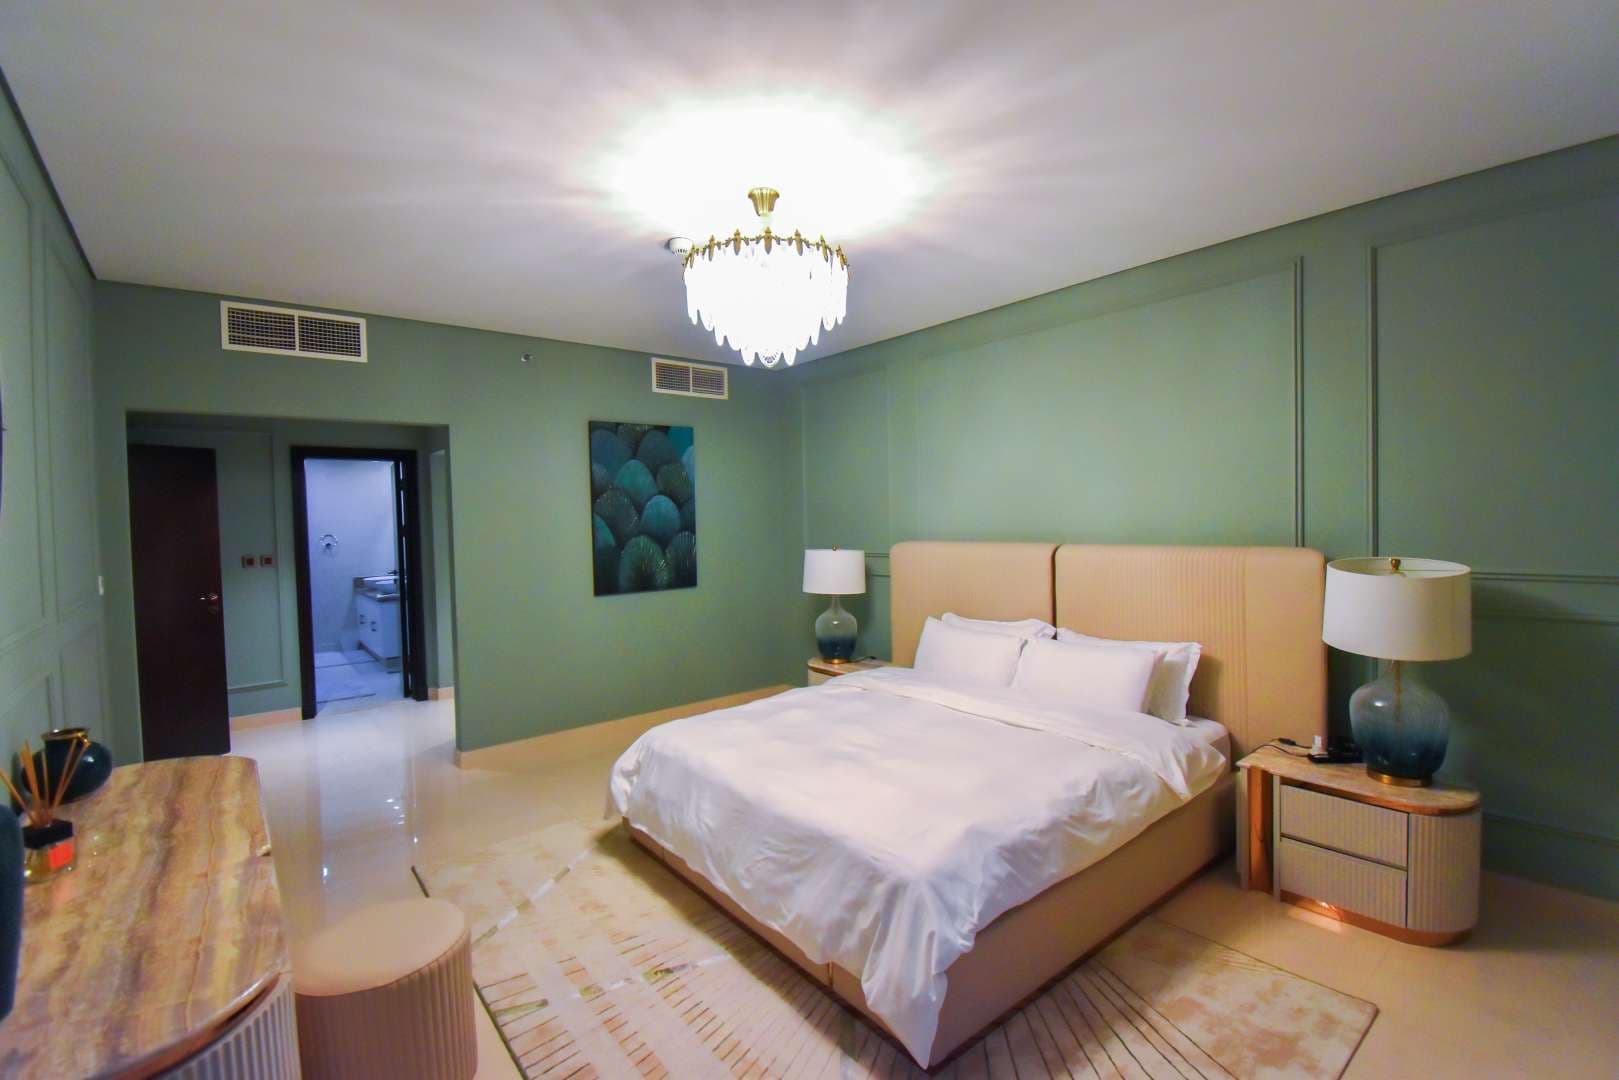 2 Bedroom Apartment For Sale Kingdom Of Sheba Lp10847 1ef3608979ed0200.jpg